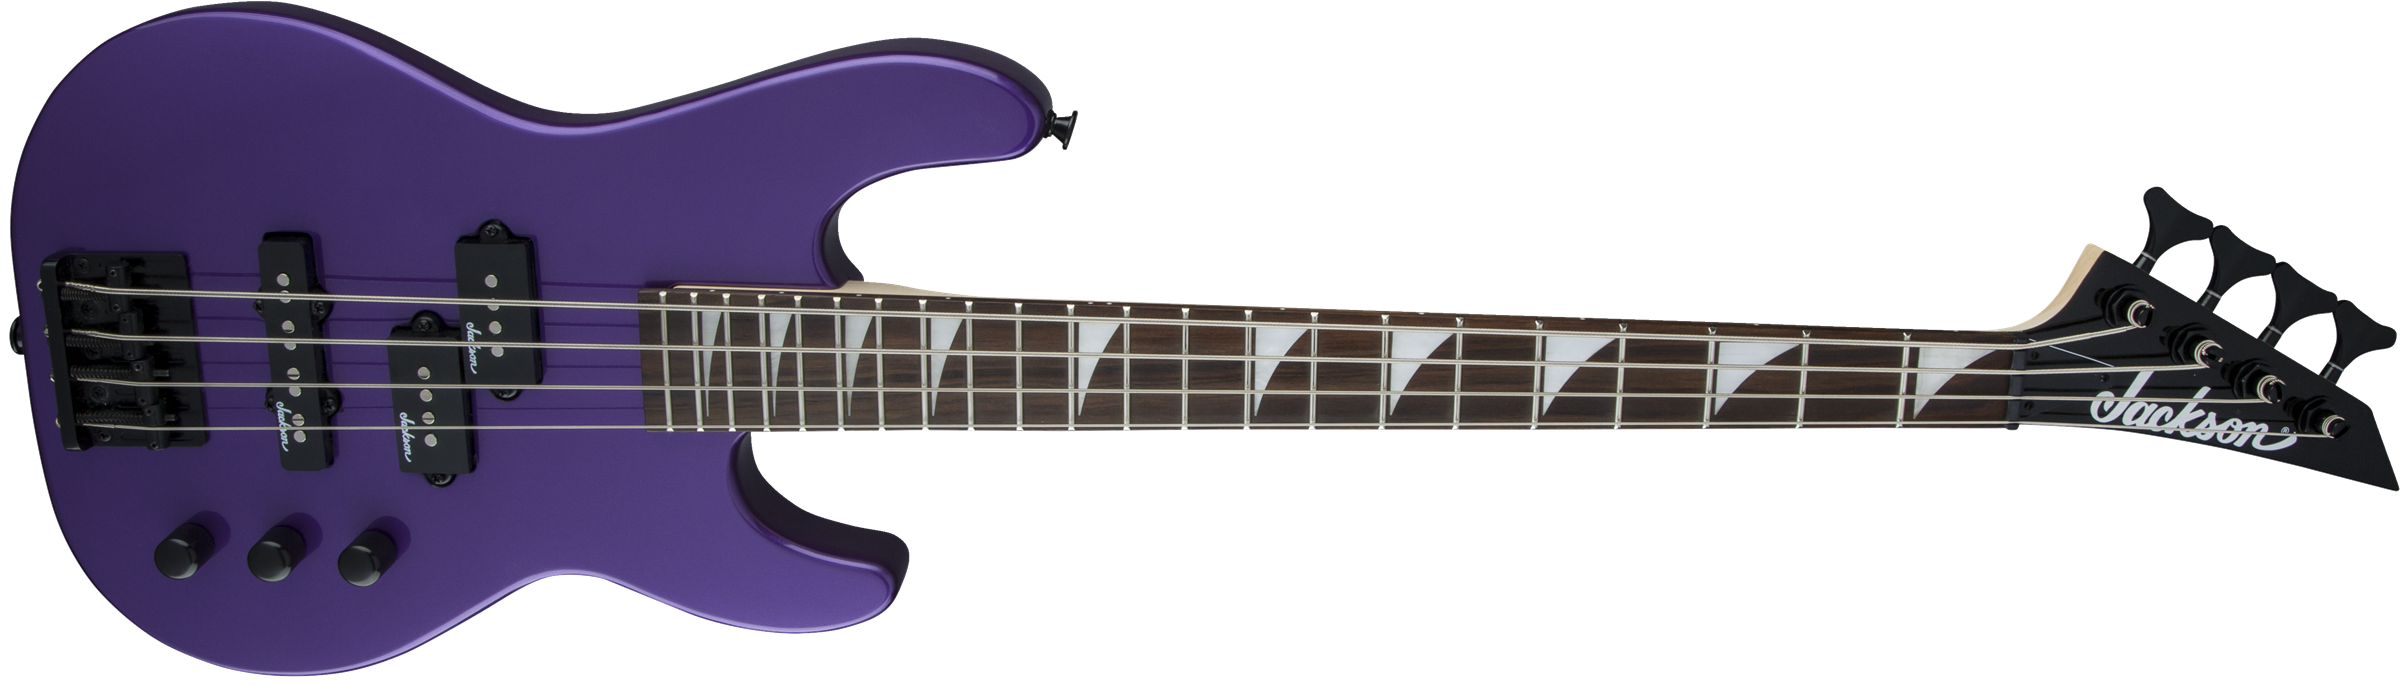 Jackson Js Series Concert Bass Minion Js1x - Pavo Purple - Short scale elektrische bas - Variation 2